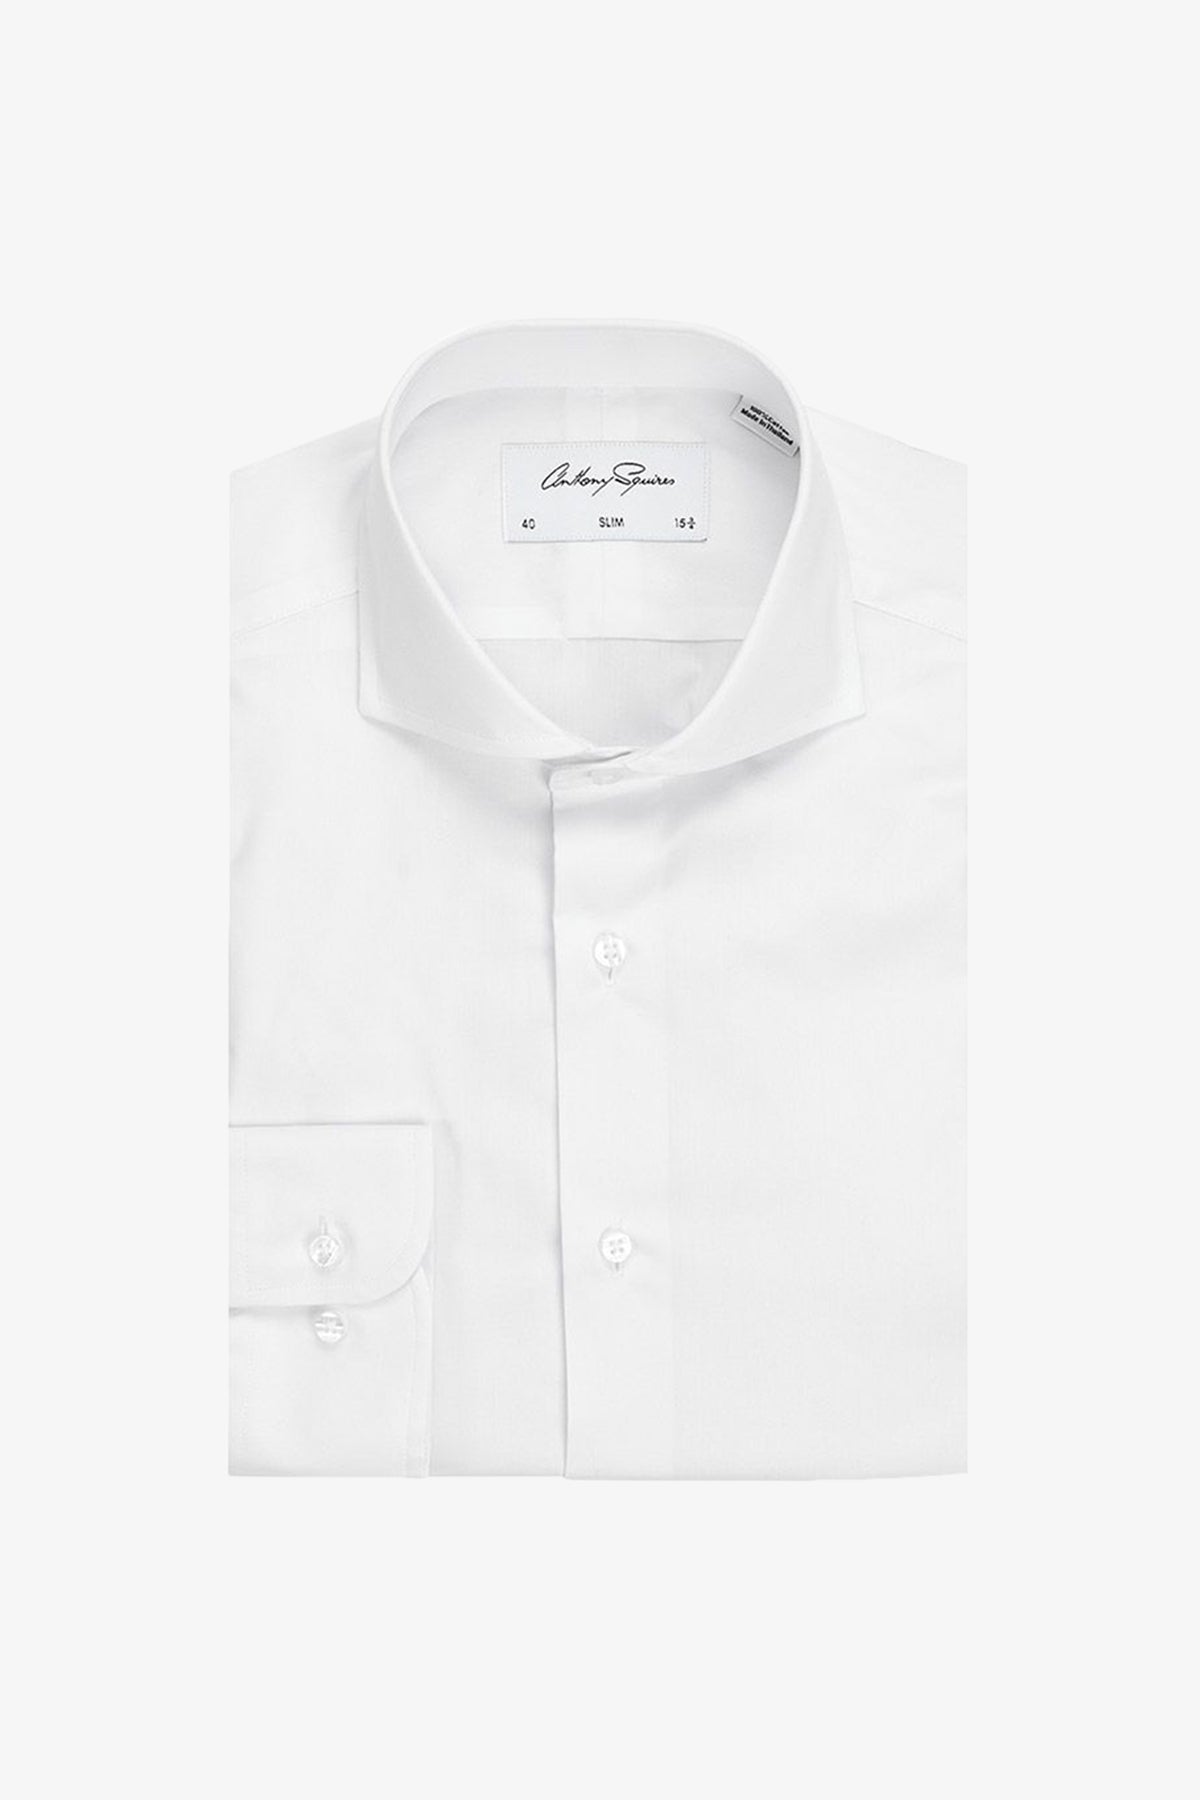 Alton - White Shirt